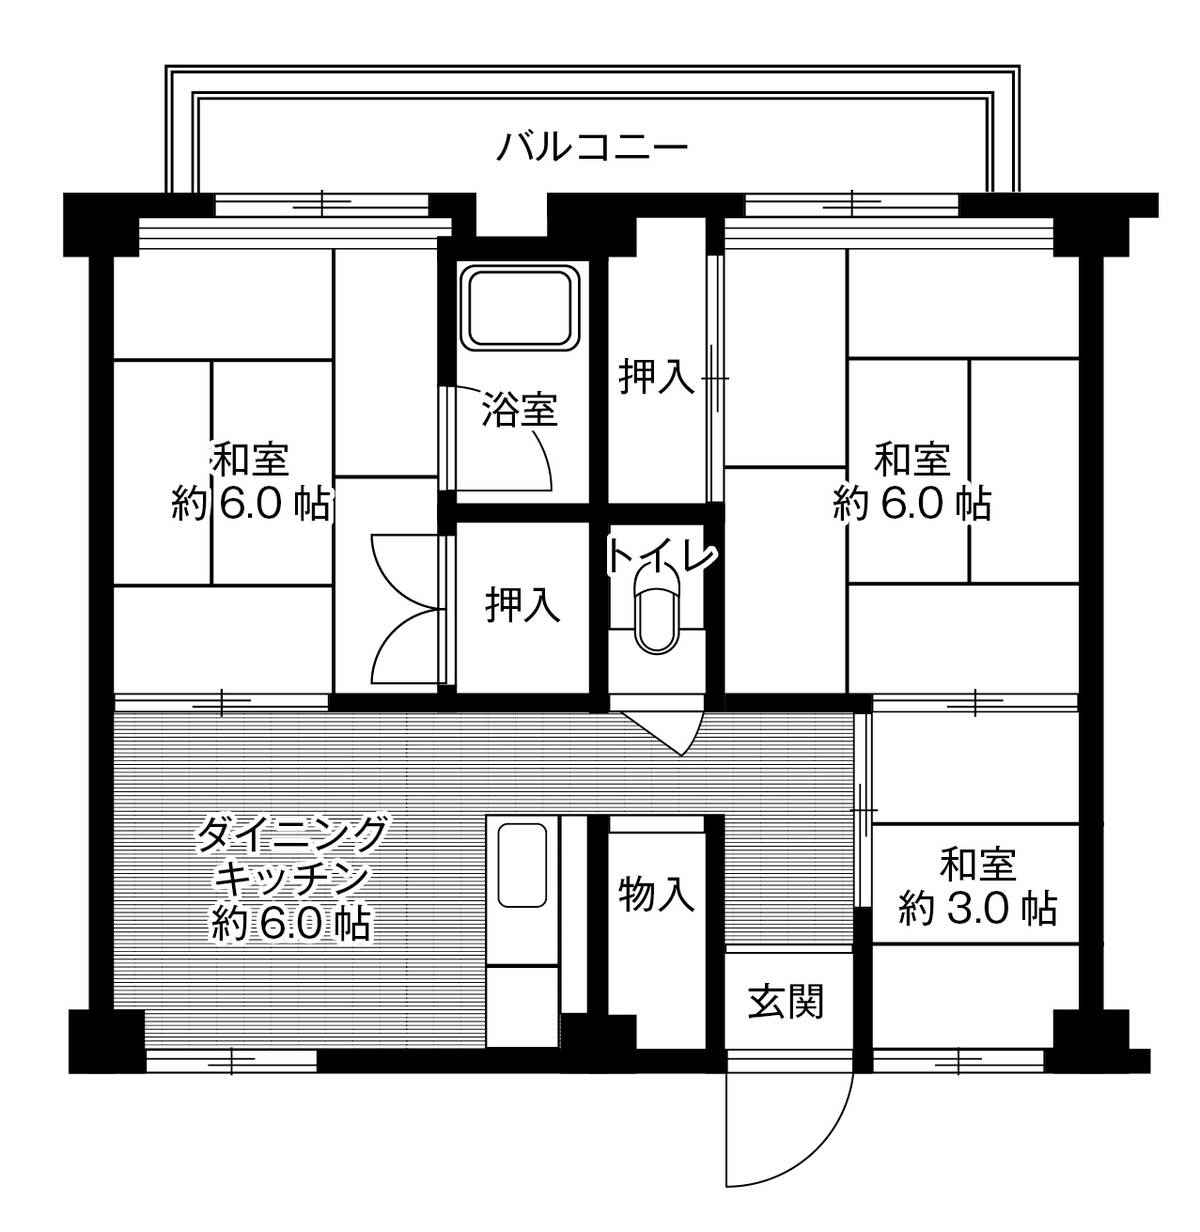 Sơ đồ phòng 3DK của Village House Higashi Futami ở Akashi-shi